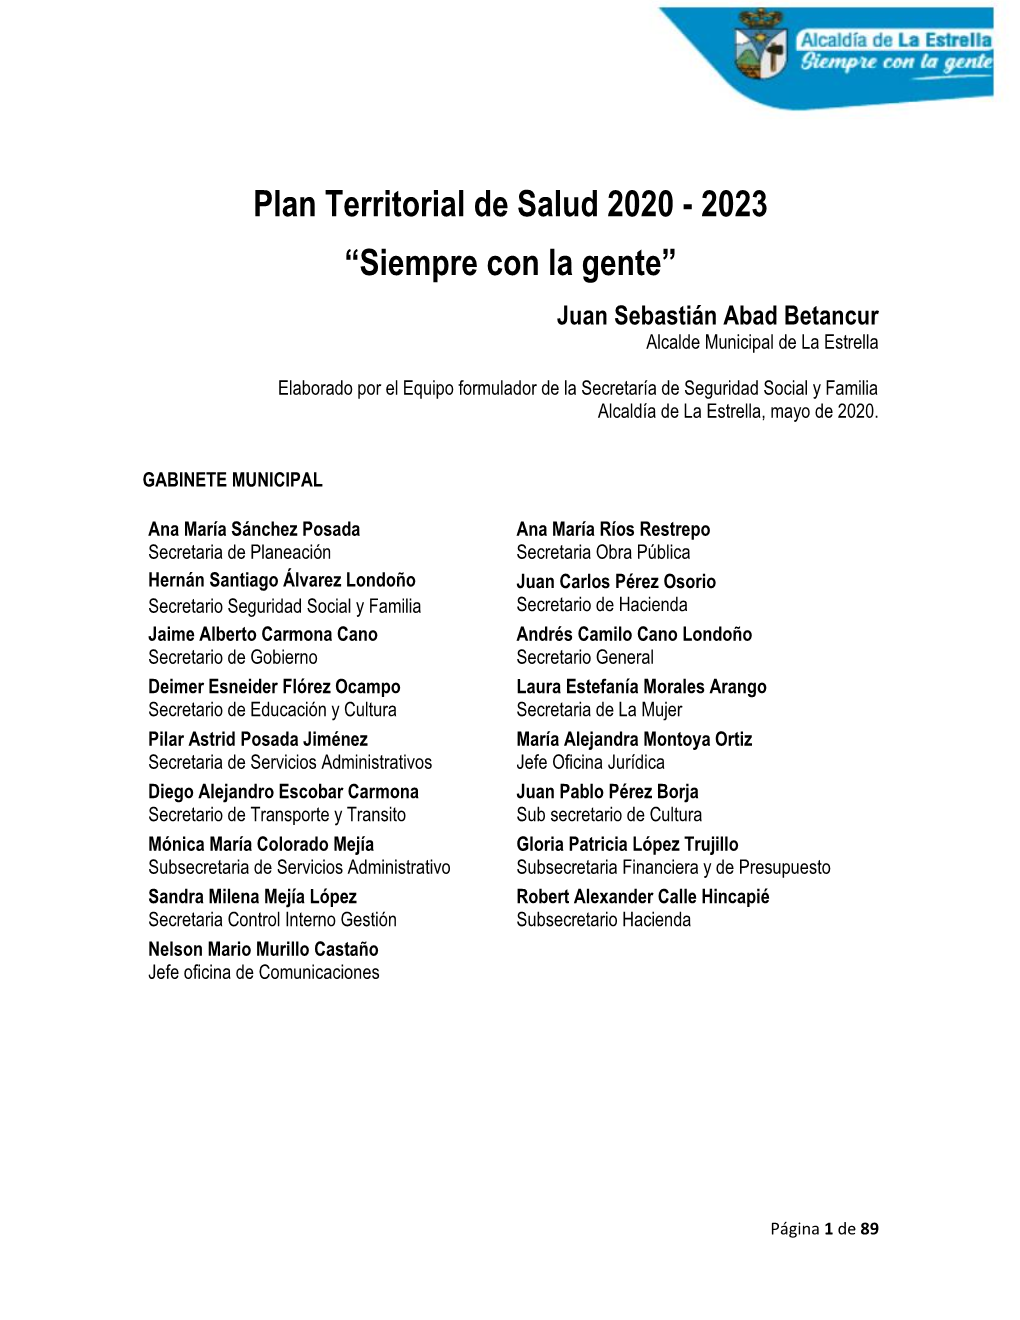 Plan Territorial De Salud 2020 - 2023 “Siempre Con La Gente” Juan Sebastián Abad Betancur Alcalde Municipal De La Estrella